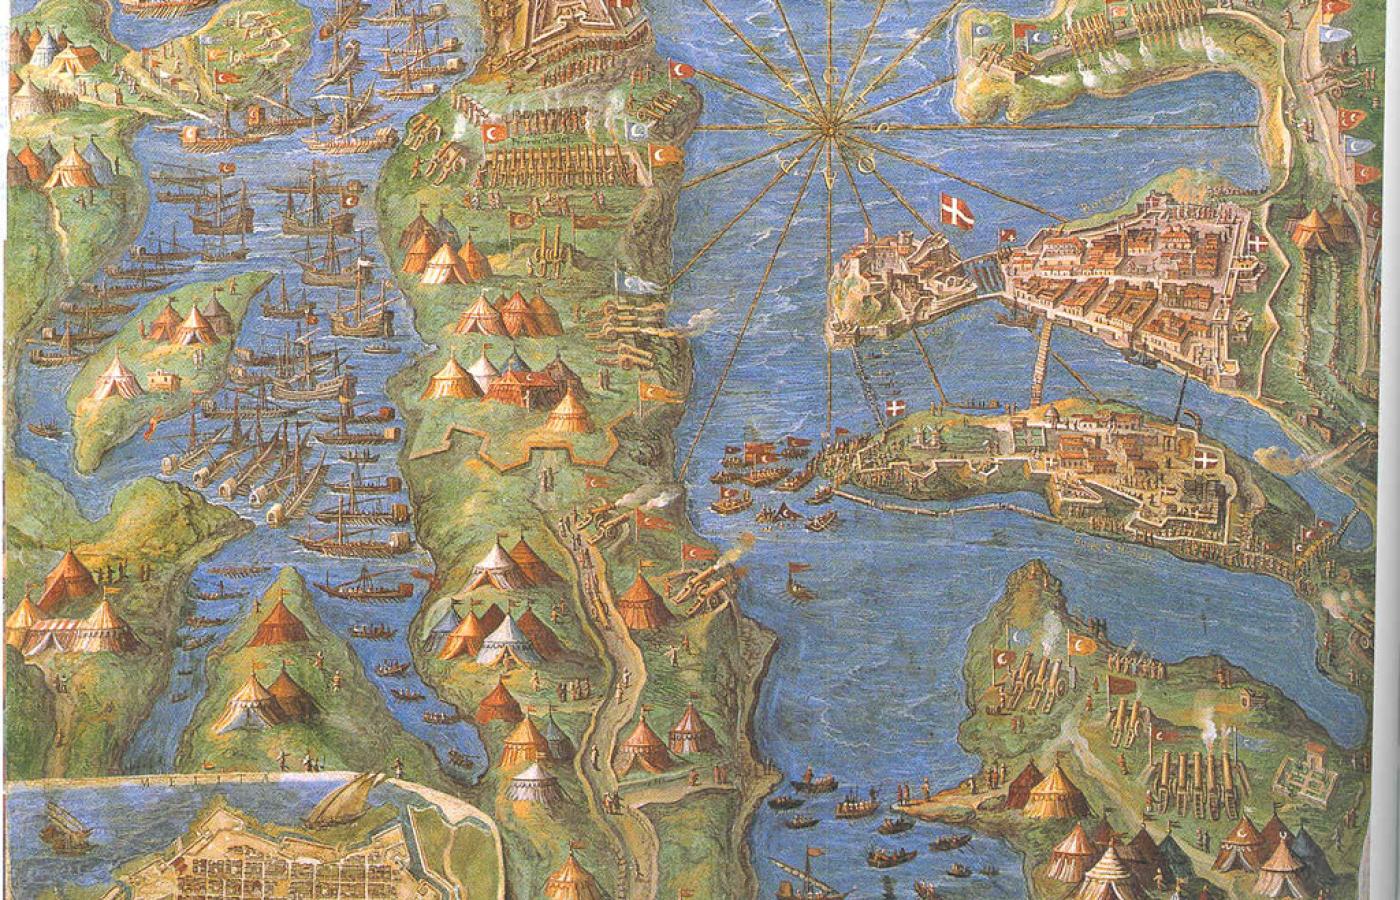 Oblężenie Malty 1565 na obrazie z epoki. Na krancu półwyspu Sciberras fort  św. Elma (w kształcie gwiazdy).